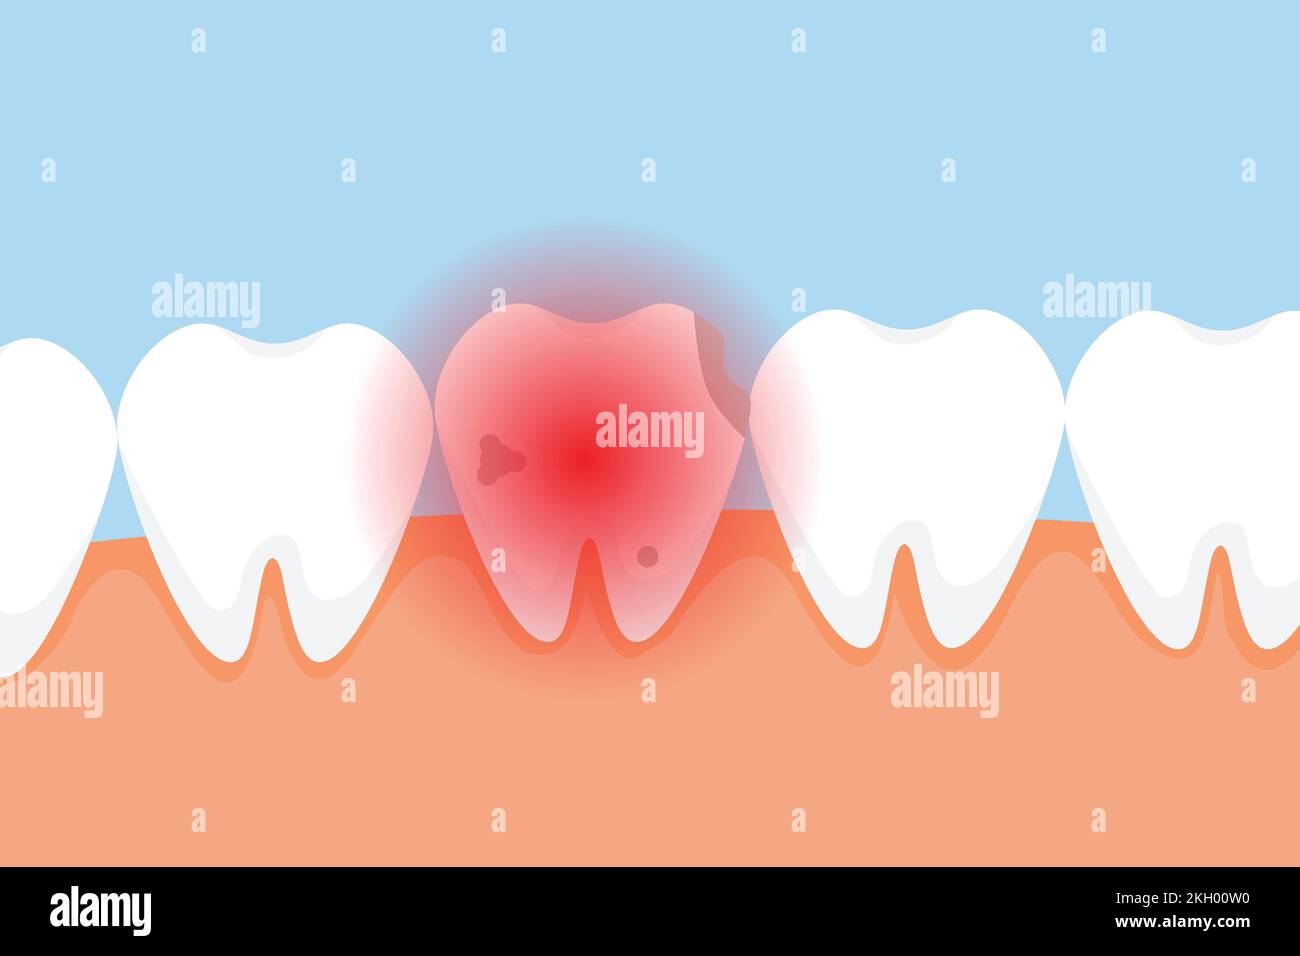 Douleur dentaire morte et donnant un concept de signal de douleur rouge. Une dent défectueuse avec des cavités et un signal de danger rouge. Vecteur d'éléments infographiques dentaires avec un Illustration de Vecteur